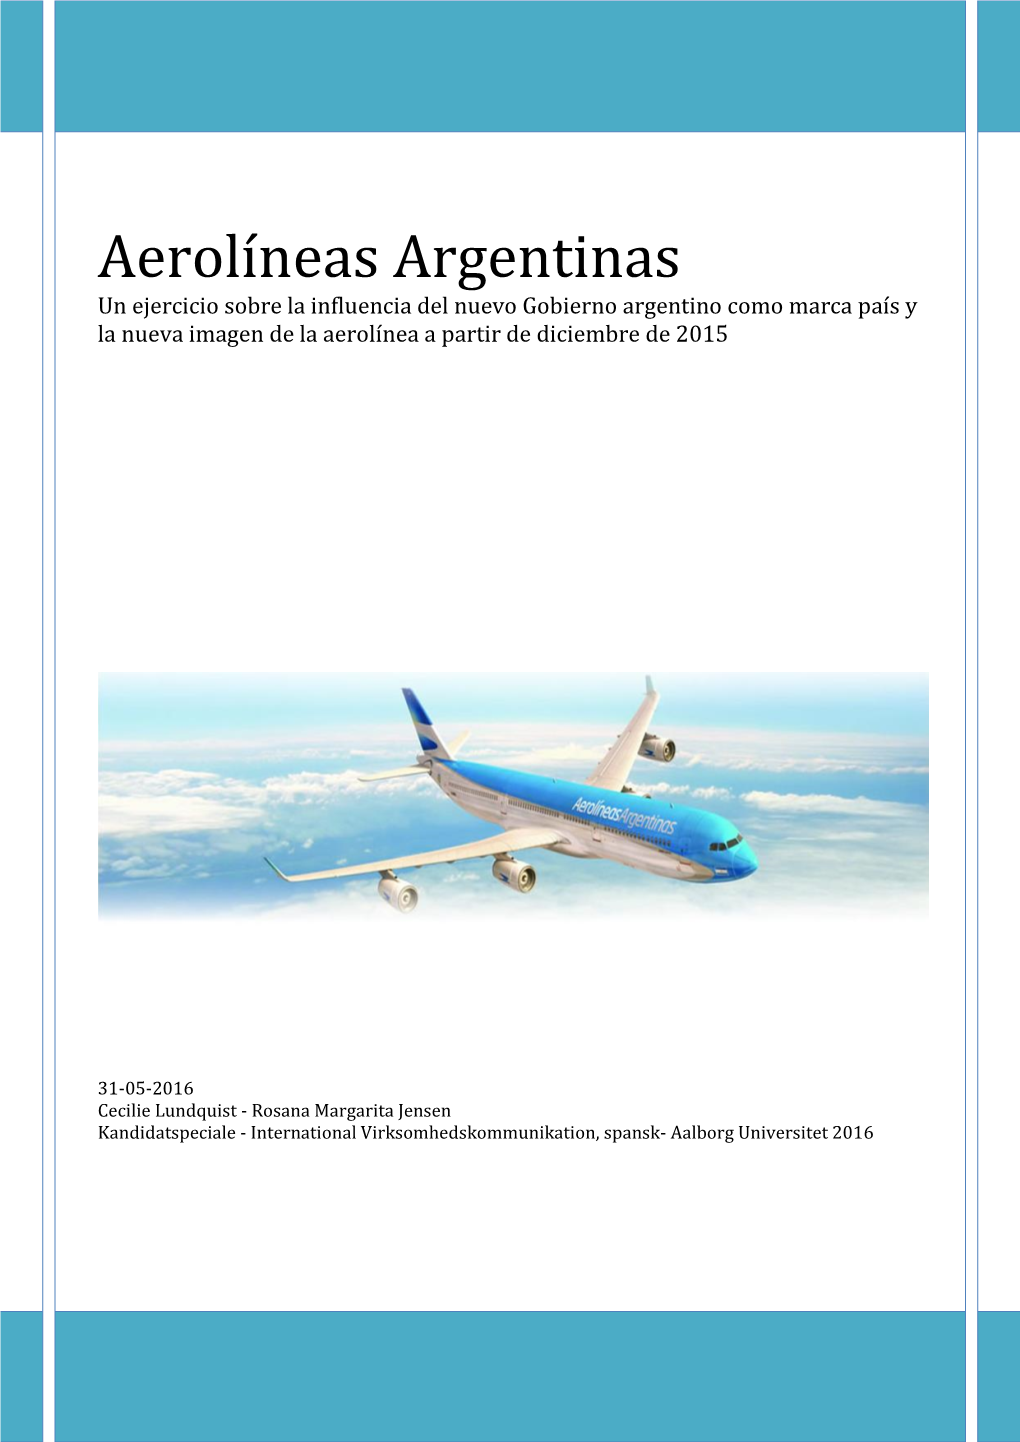 Aerolíneas Argentinas Un Ejercicio Sobre La Influencia Del Nuevo Gobierno Argentino Como Marca País Y La Nueva Imagen De La Aerolínea a Partir De Diciembre De 2015